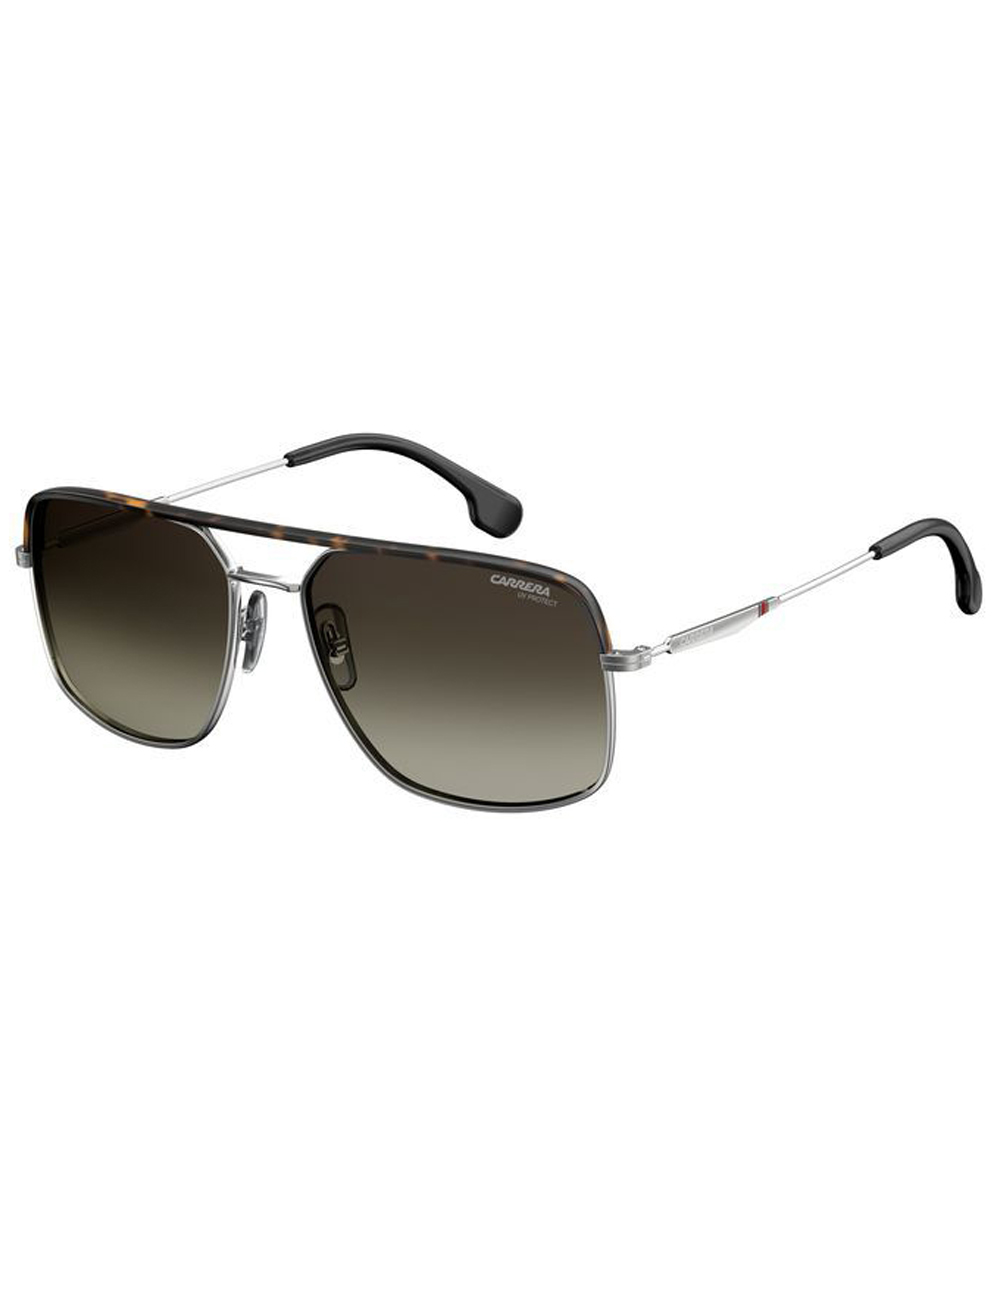 Солнцезащитные очки унисекс Carrera 152/S коричневые